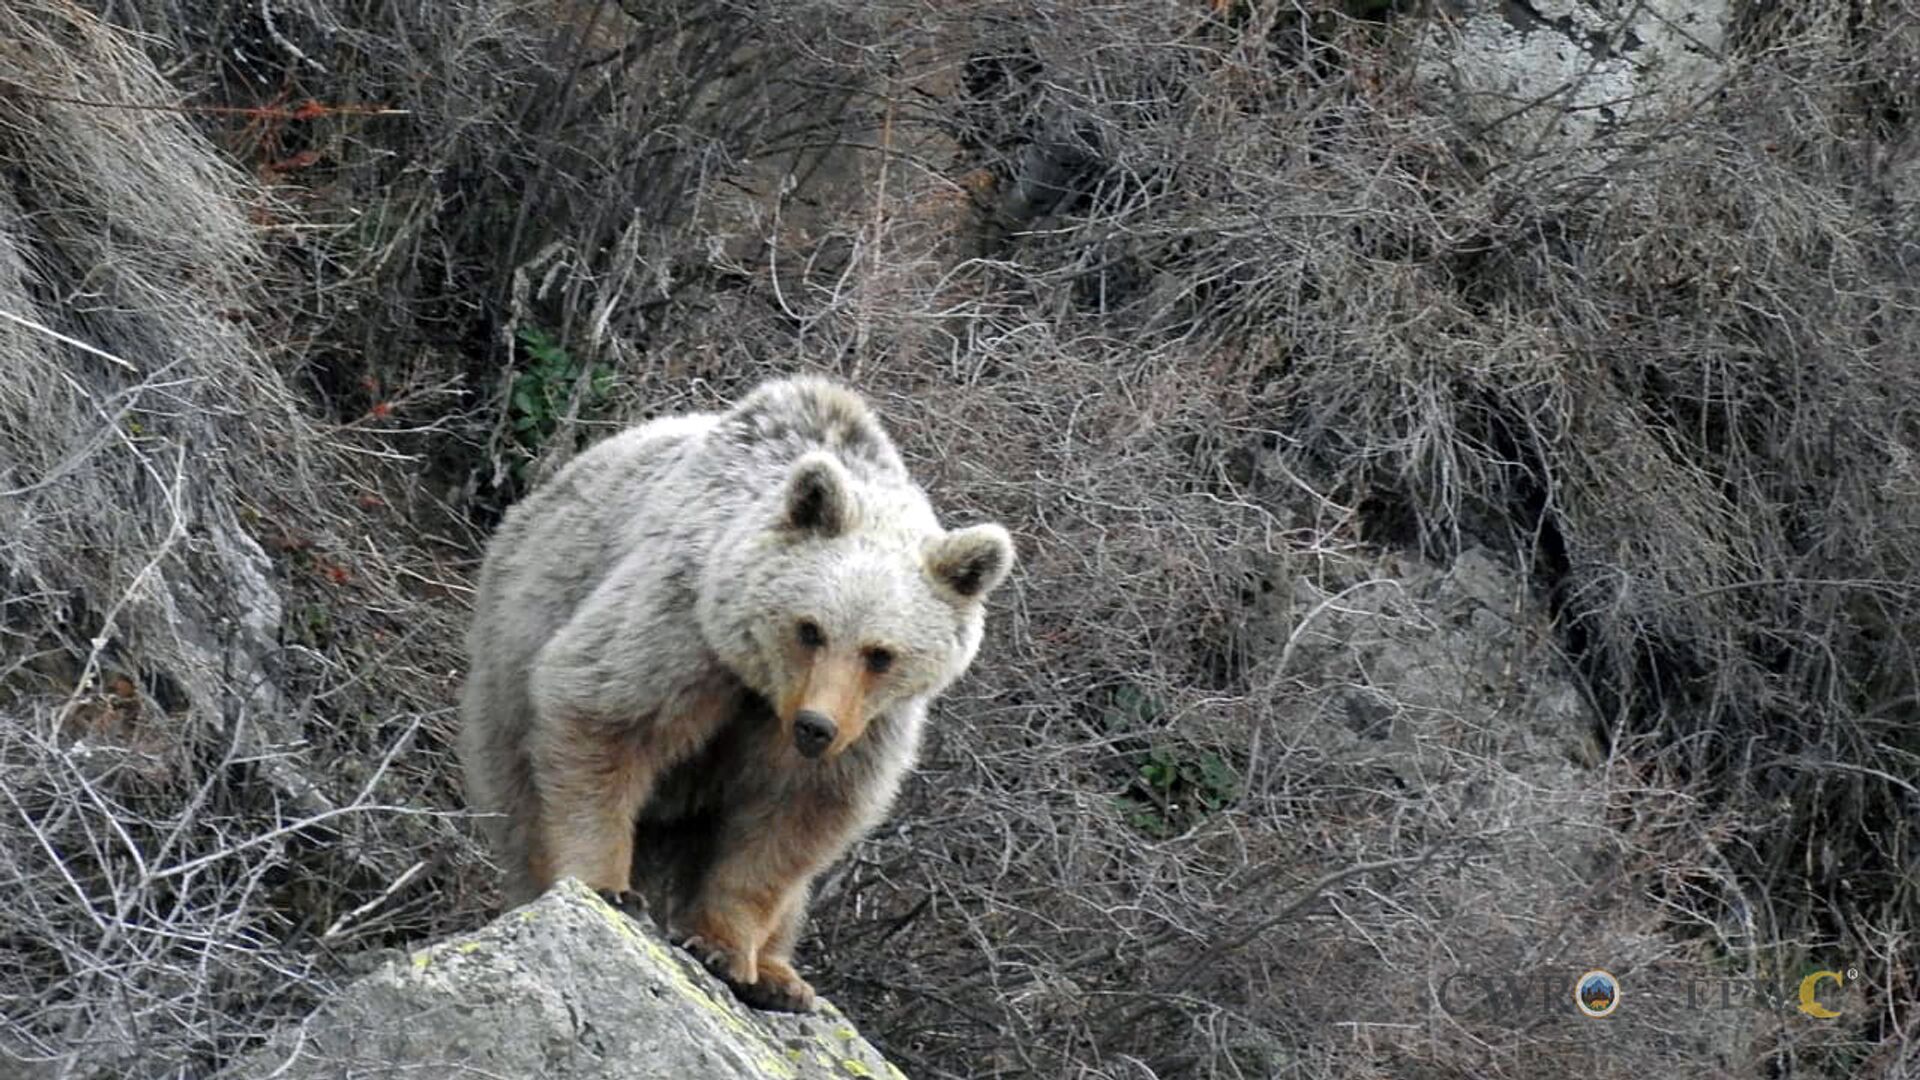 Камеры биосферного заповедника зафиксировали быт бурых медведей в лесах Армении - Sputnik Армения, 1920, 11.05.2021